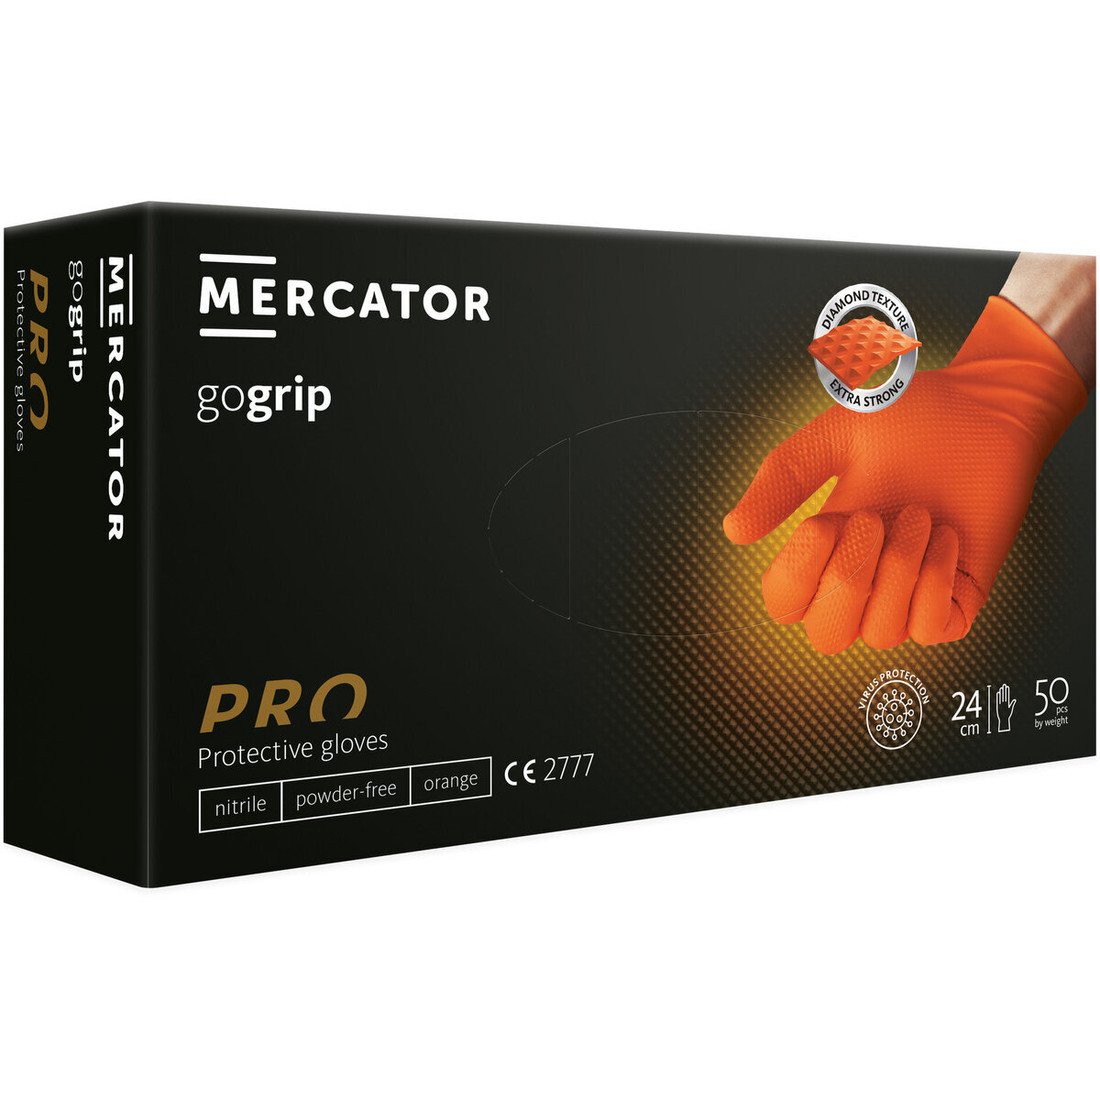 Nepudrované nitrilové rukavice MERCATOR gogrip (orange), velikost L, balení 50 ks